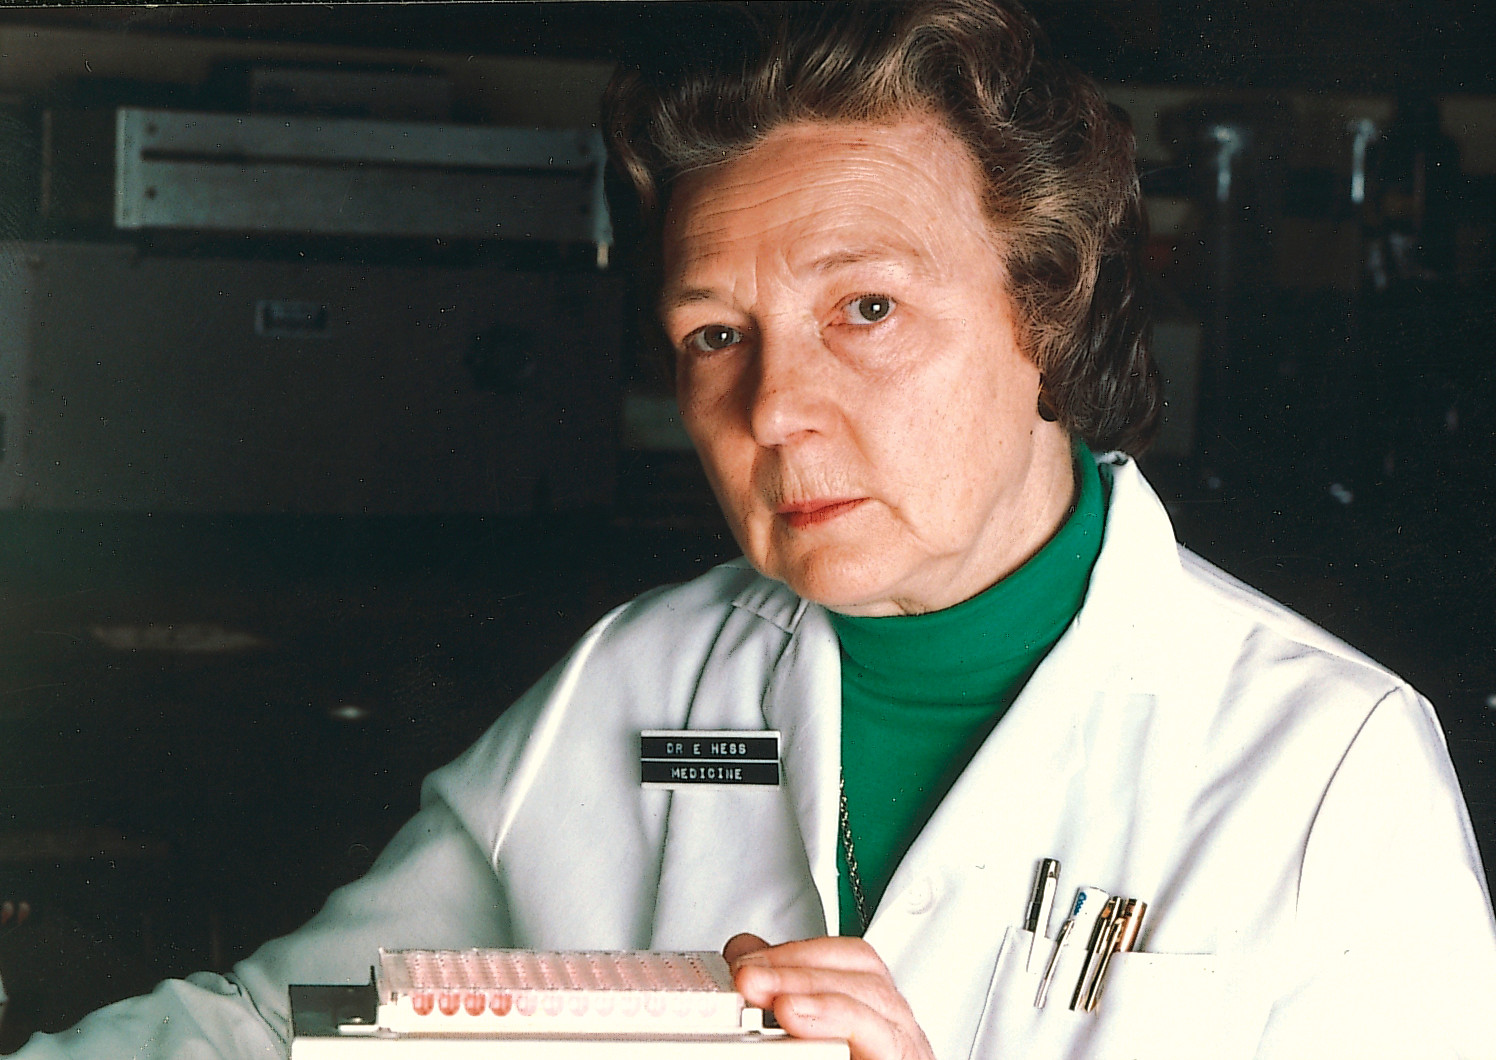 Dr. Evelyn V. Hess